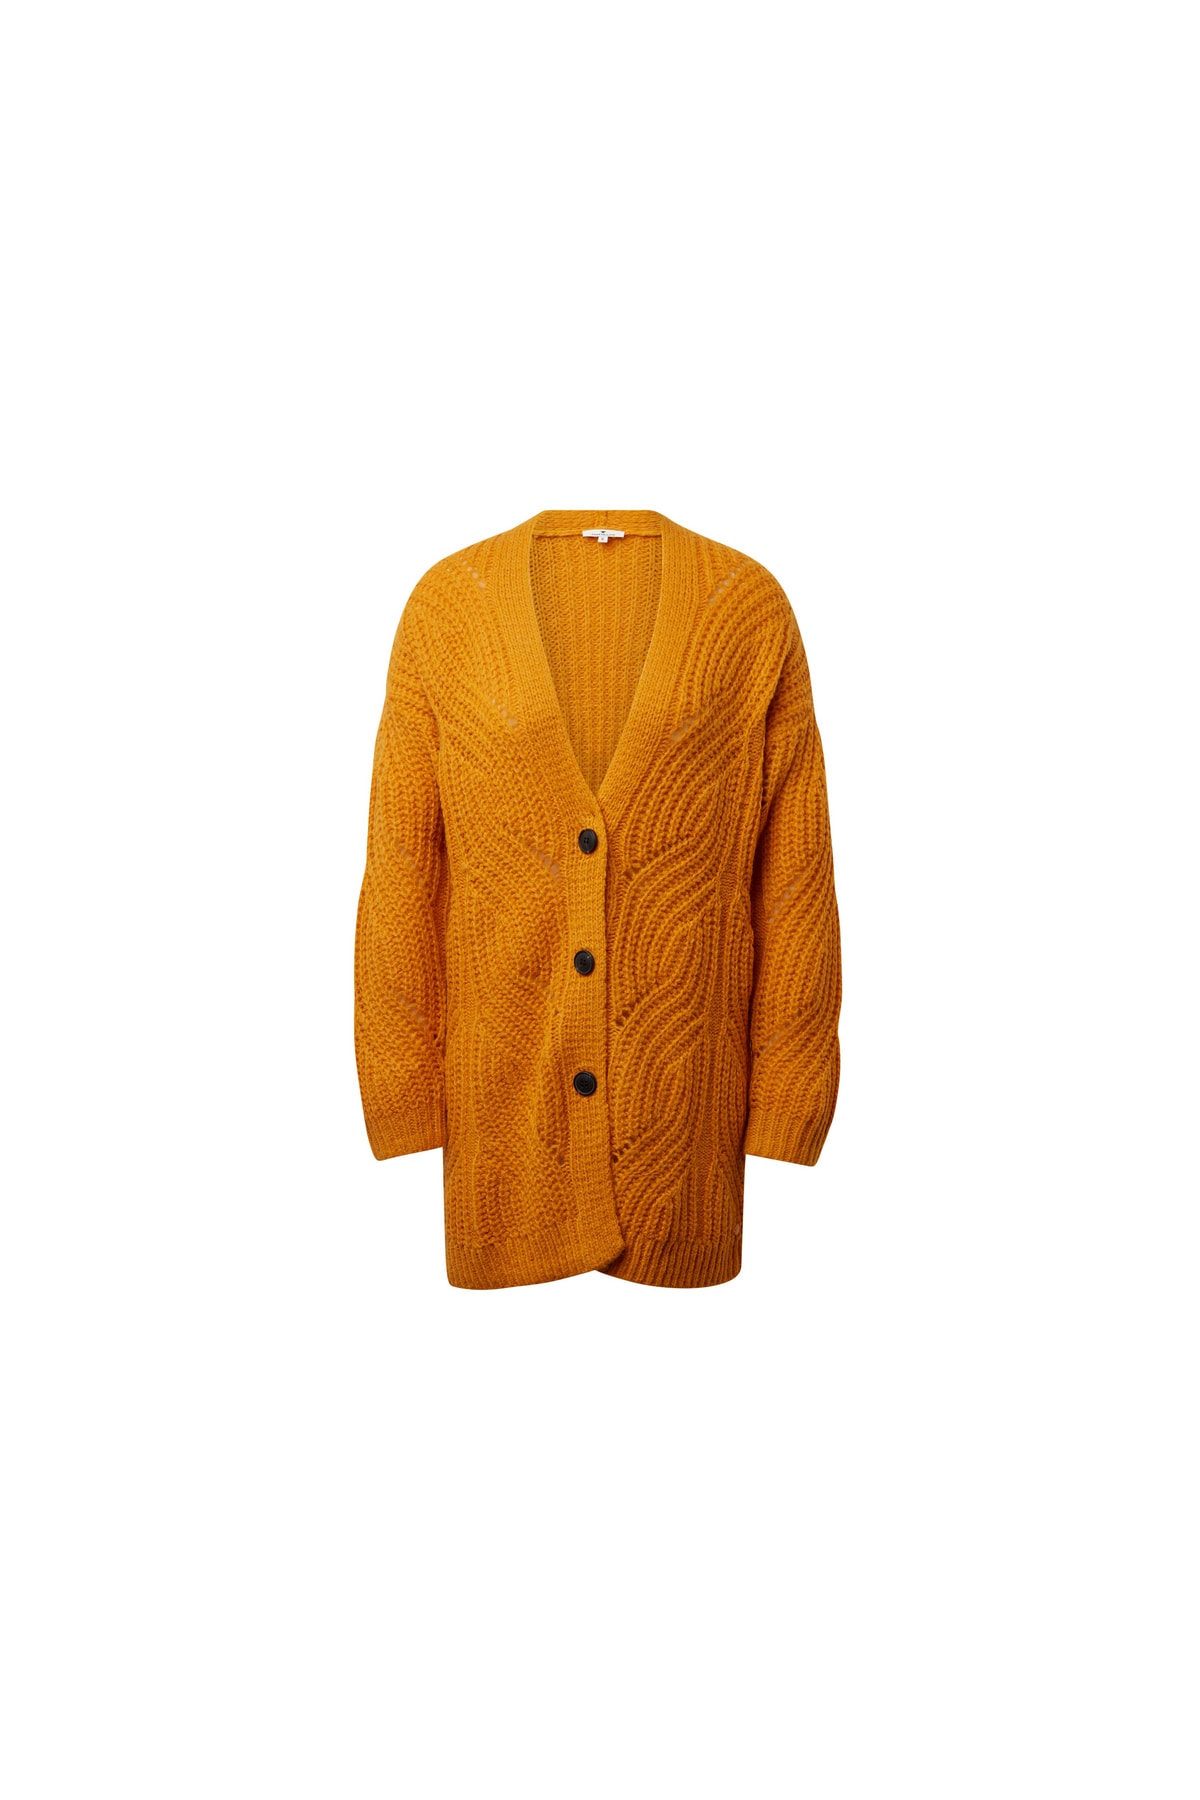 Tom Tailor Pullover Orange Regular Fit Fast ausverkauft